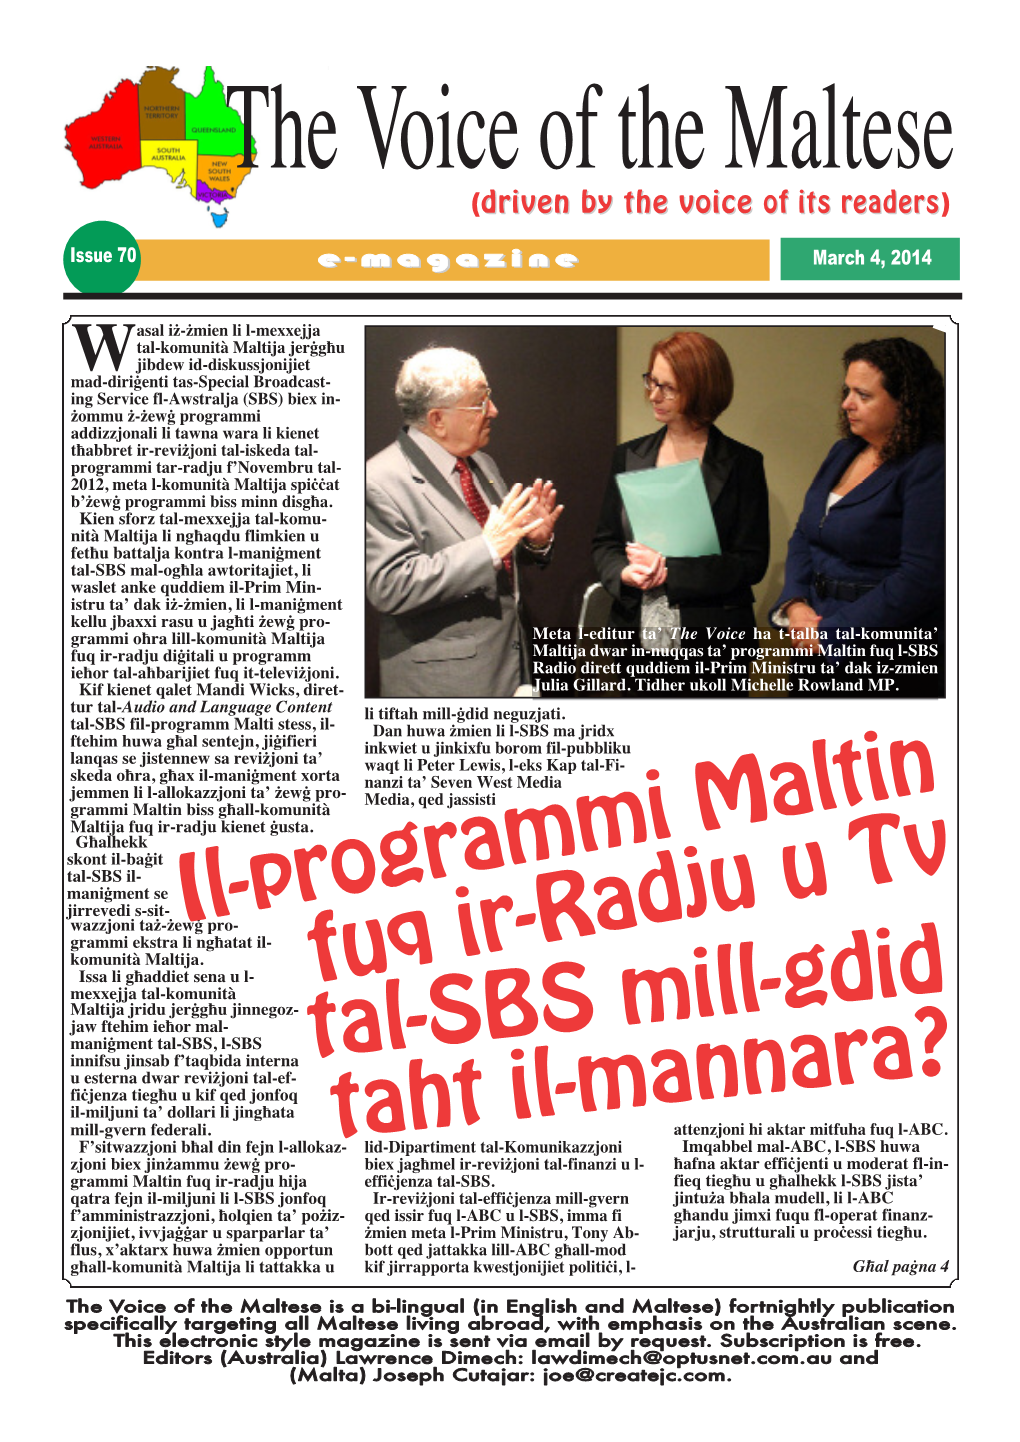 Il-Programmi Maltin Fuq Ir-Radju U Tv Tal-SBS Mill-Gdid Taht Il-Mannara?